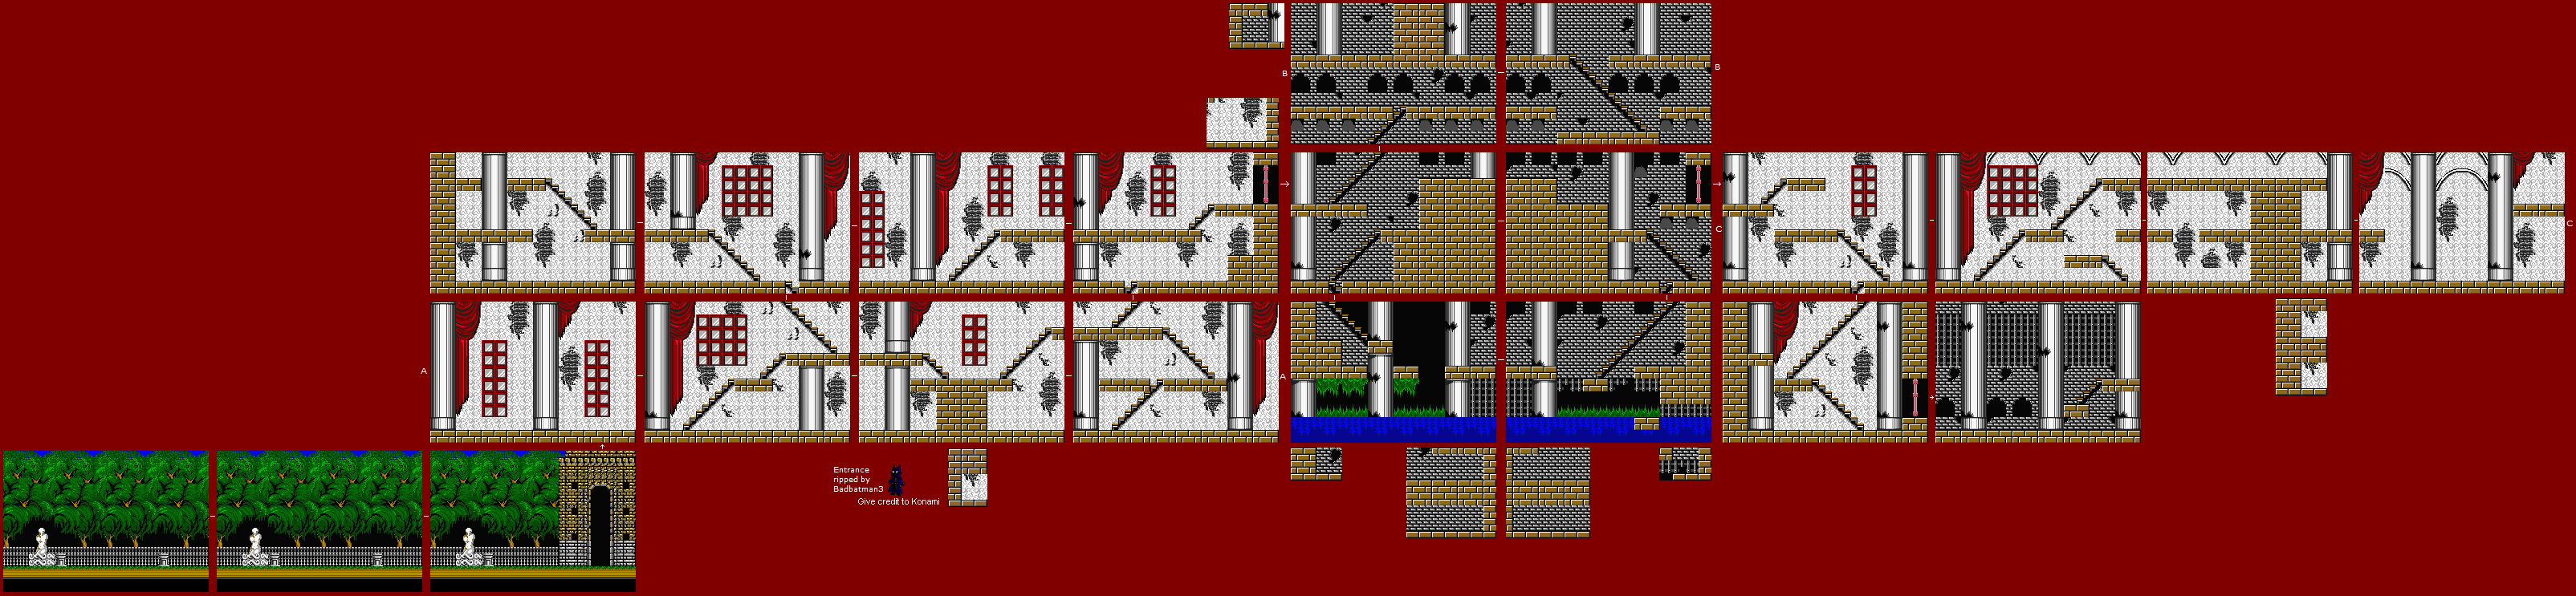 Vampire Killer (MSX2) - Stage 1: Entrance